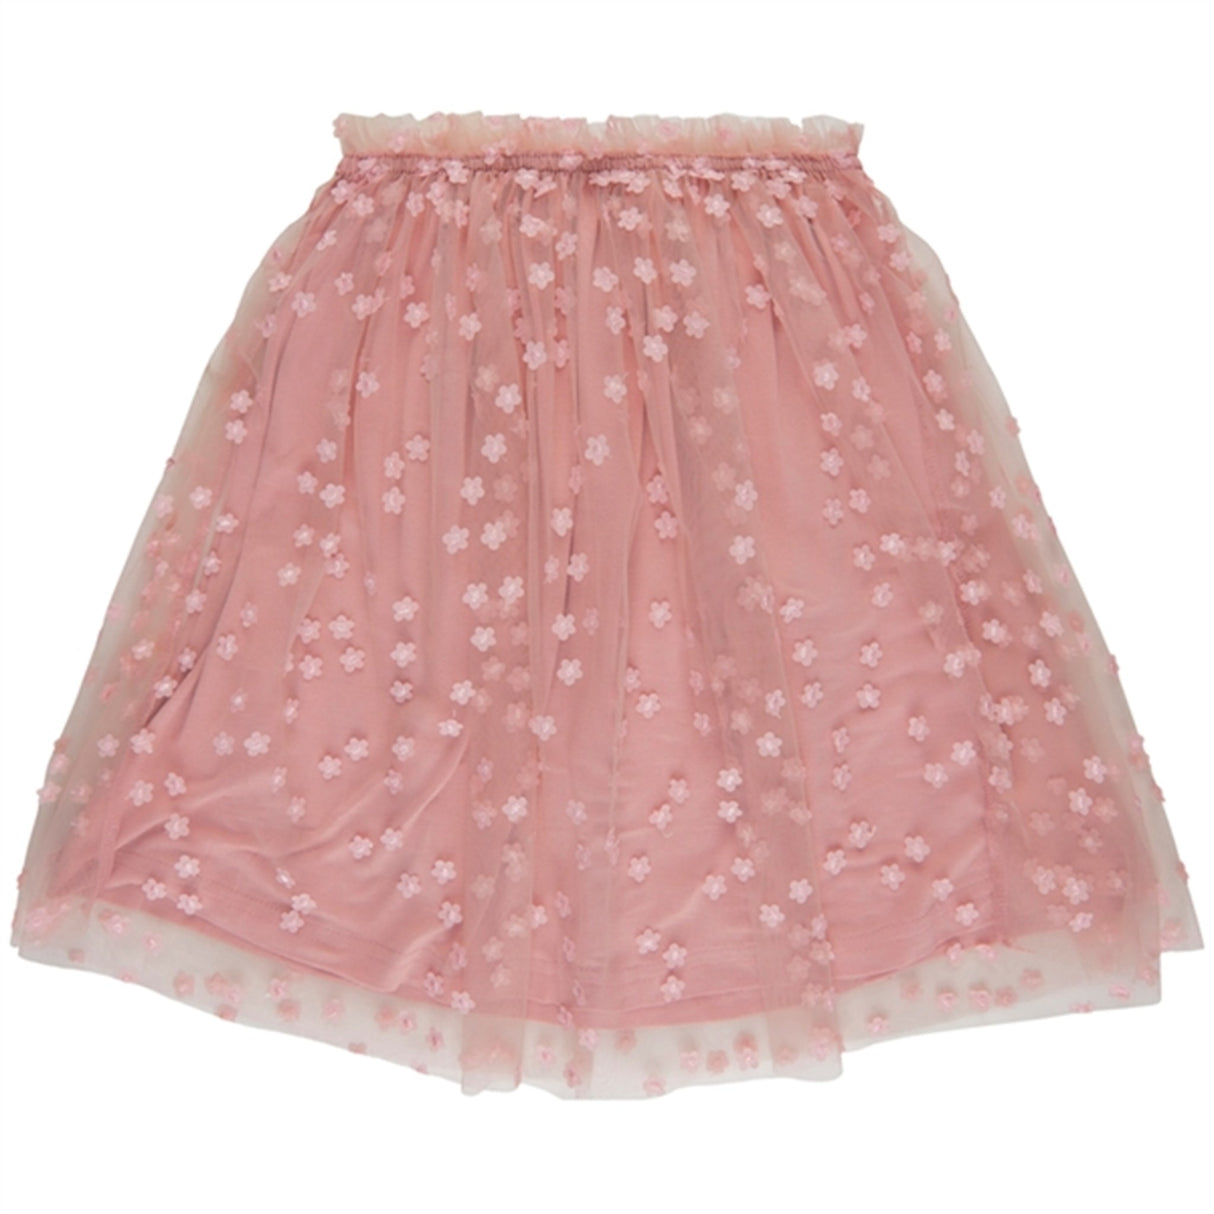 THE NEW Peach Beige Gracelyn Skirt